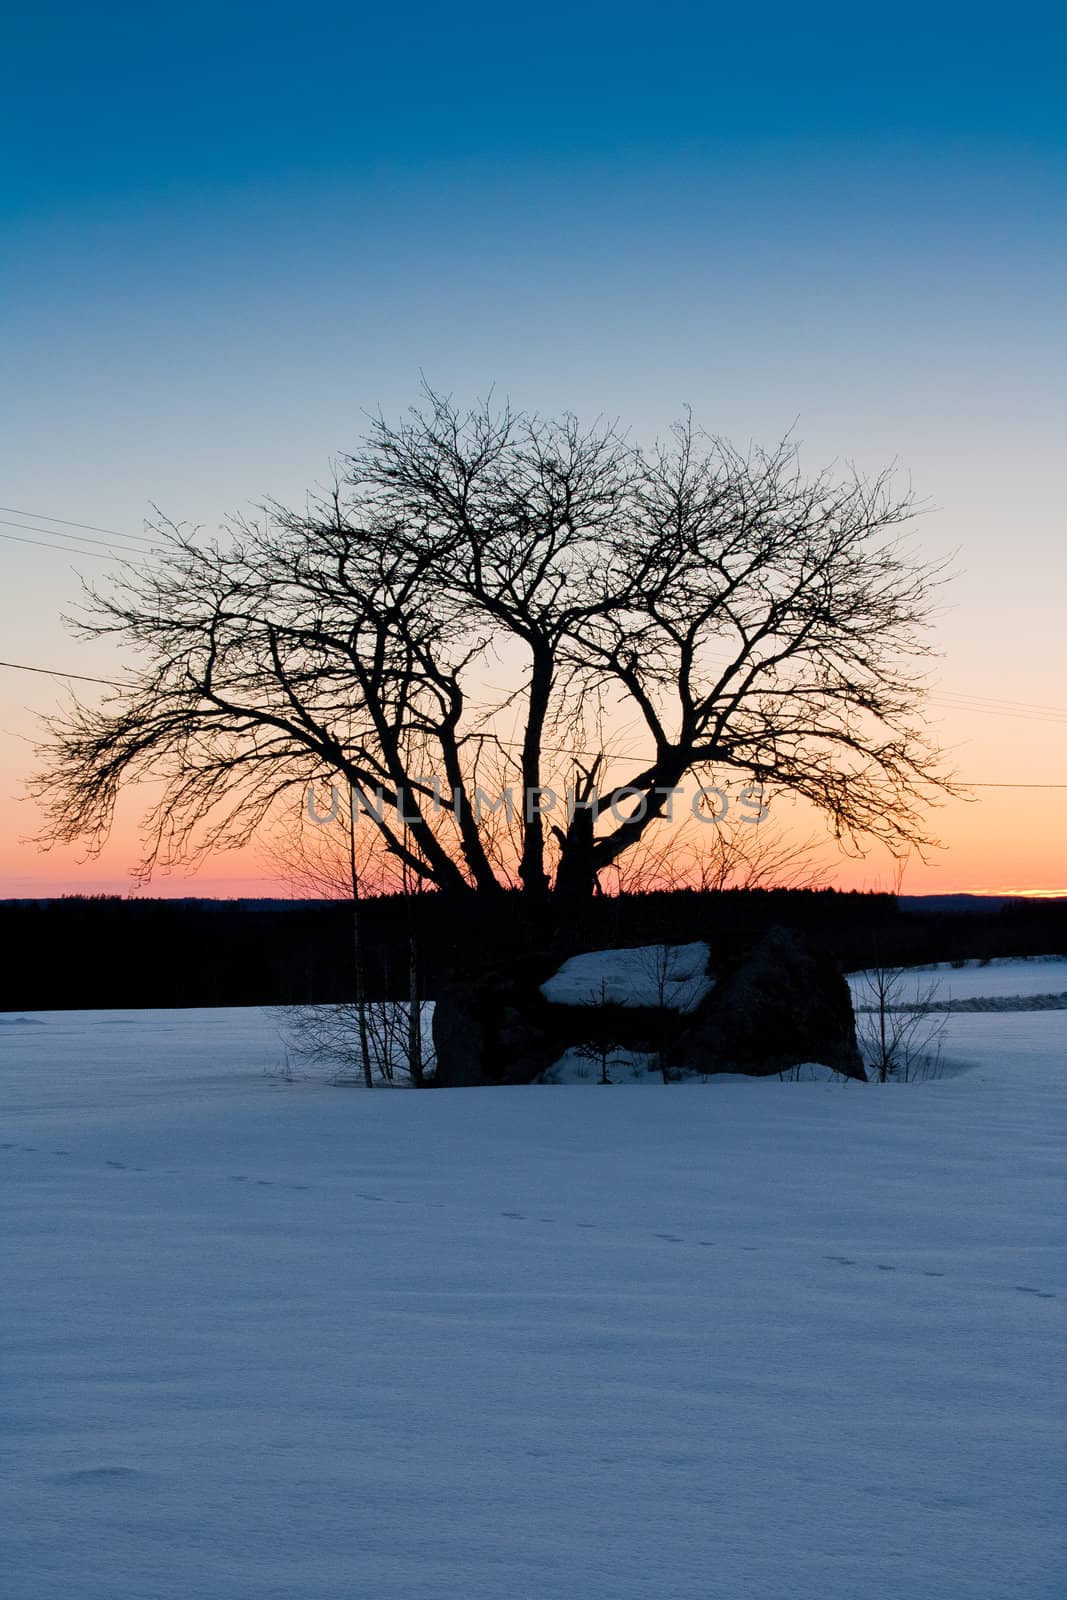 Rowan tree on a sunset